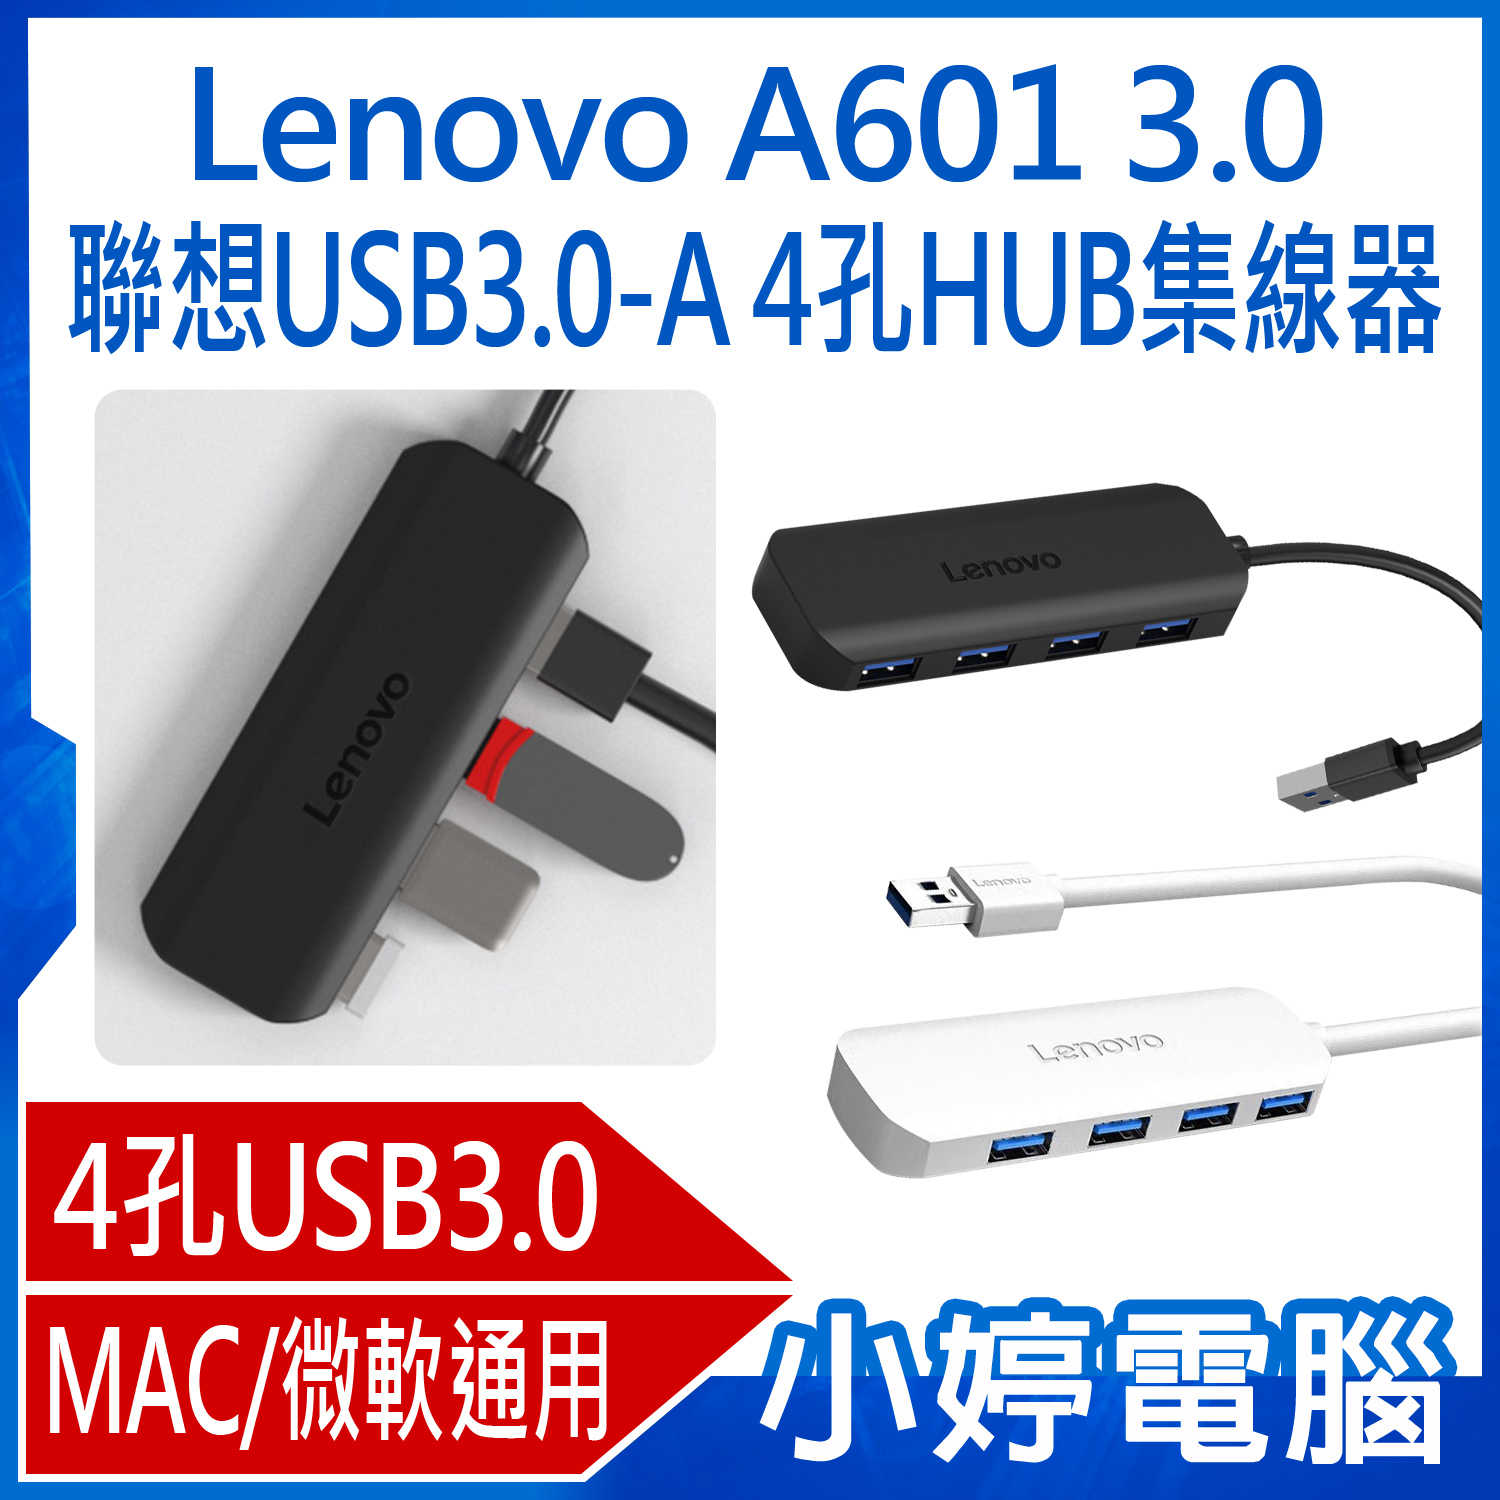 【小婷電腦】Lenovo A601 3.0 聯想USB3.0-A 4孔HUB集線器 MAC/微軟通用